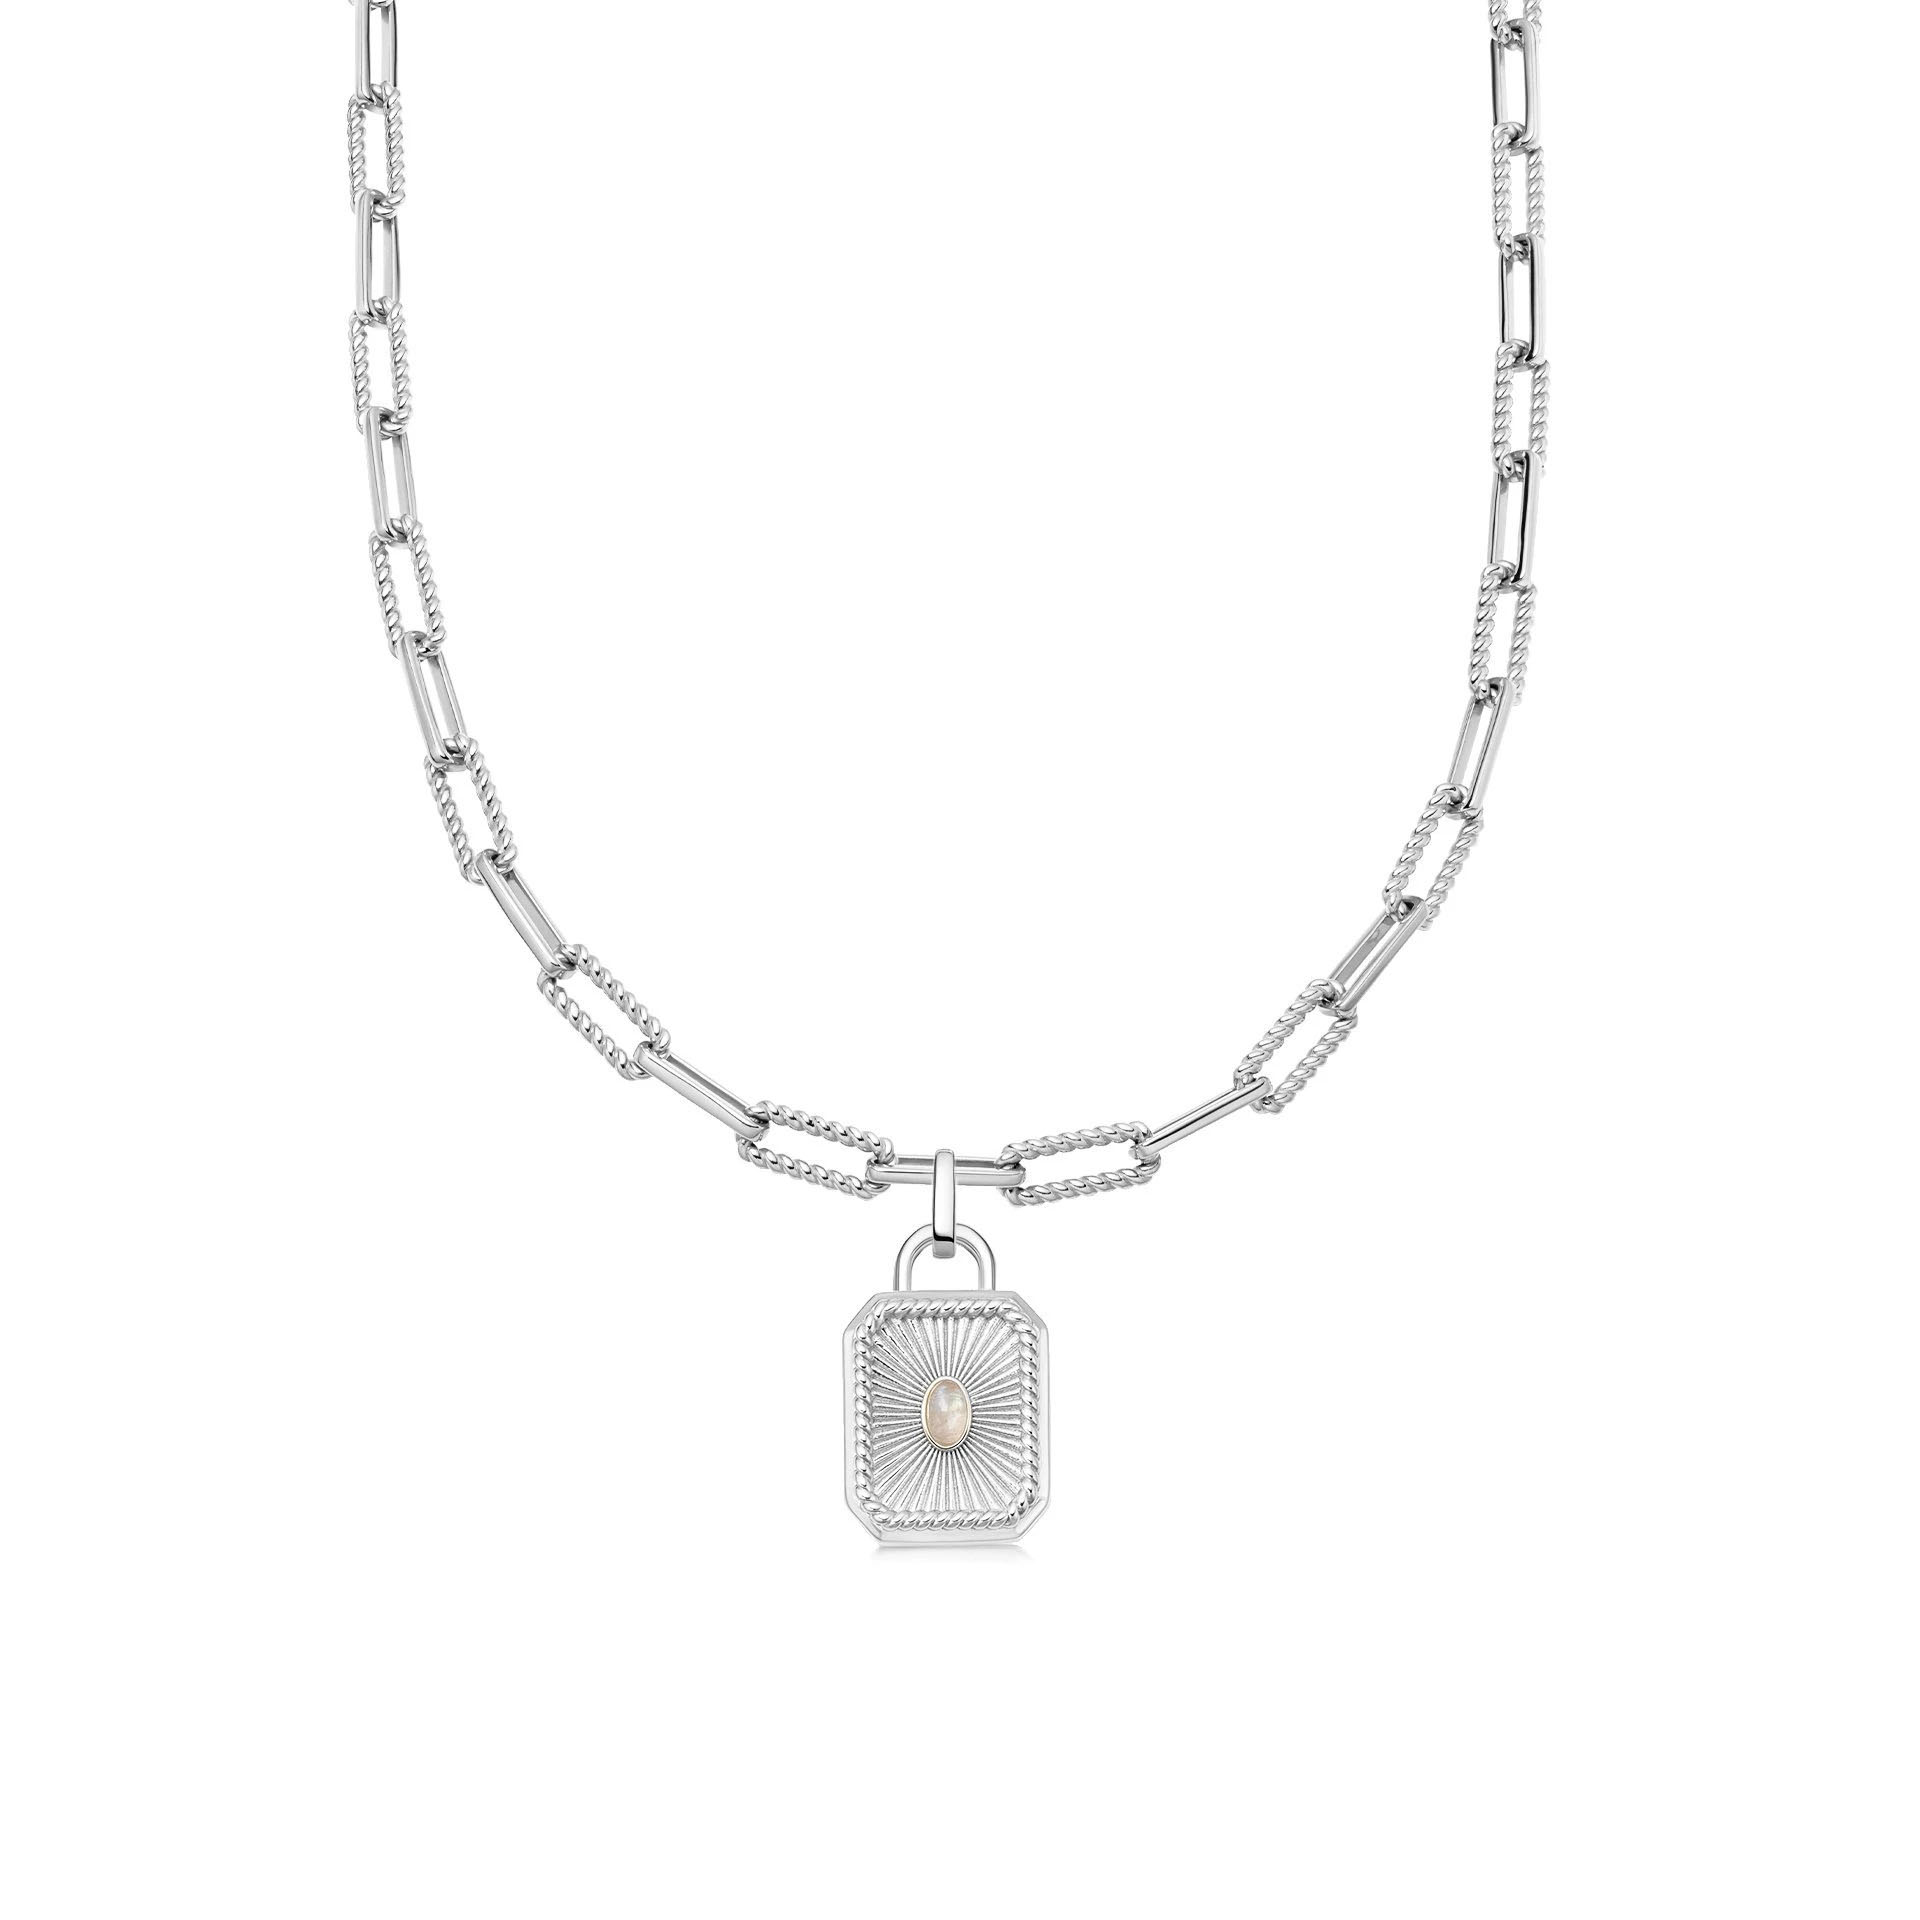 الجملة OEM سلسلة OEM / ODM قلادة مجوهرات فضة مطلي على النحاس تصميم المجوهرات الشكل الخاص بك